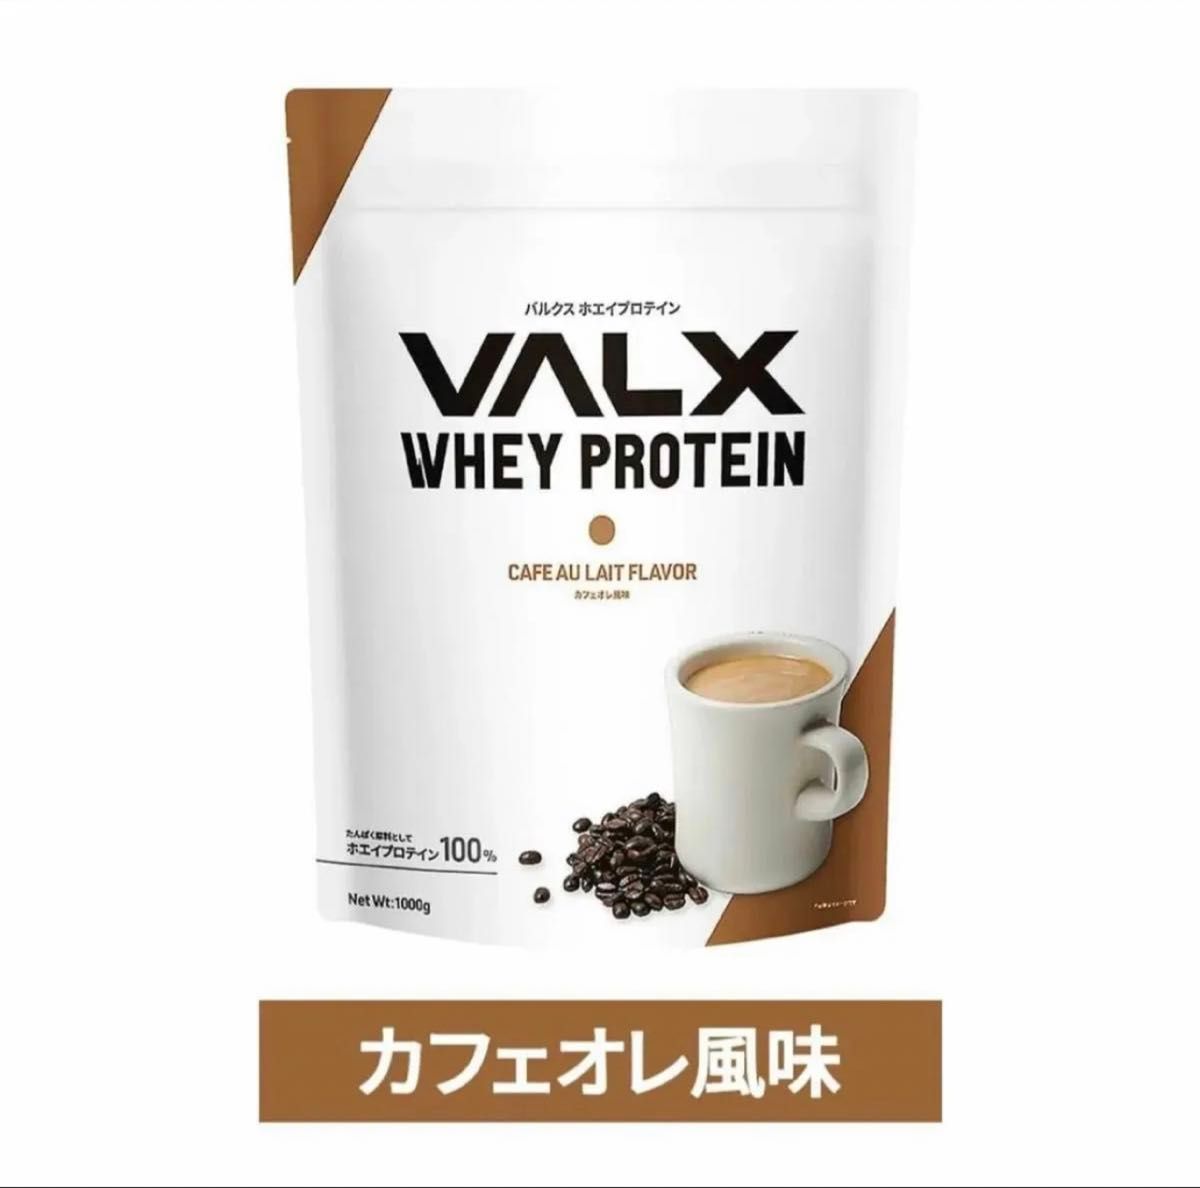 【カフェオレ風味】VALX ホエイプロテイン 1kg バルクス プロテイン  ホエイ